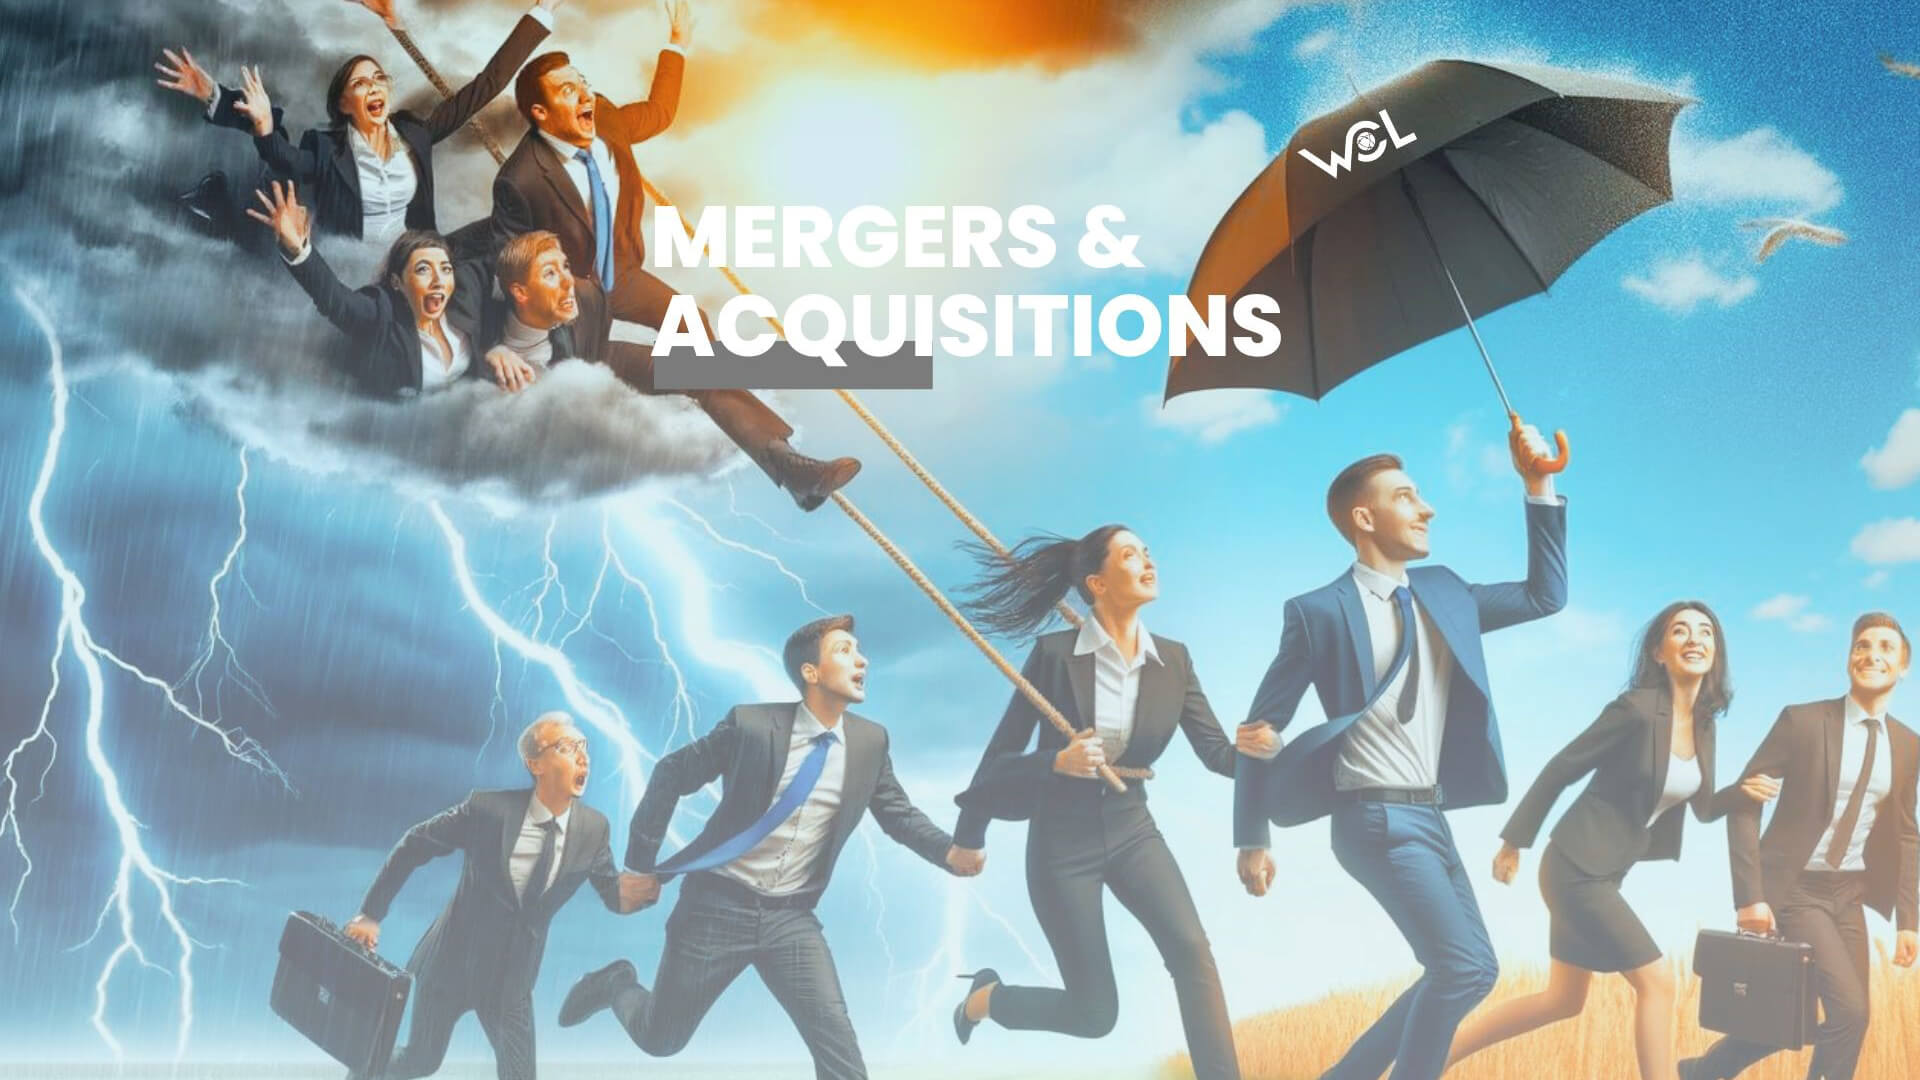 Mergers & Acquisitions (M&A) in der Logistikbranche: Eine Krise oder eine Chance?